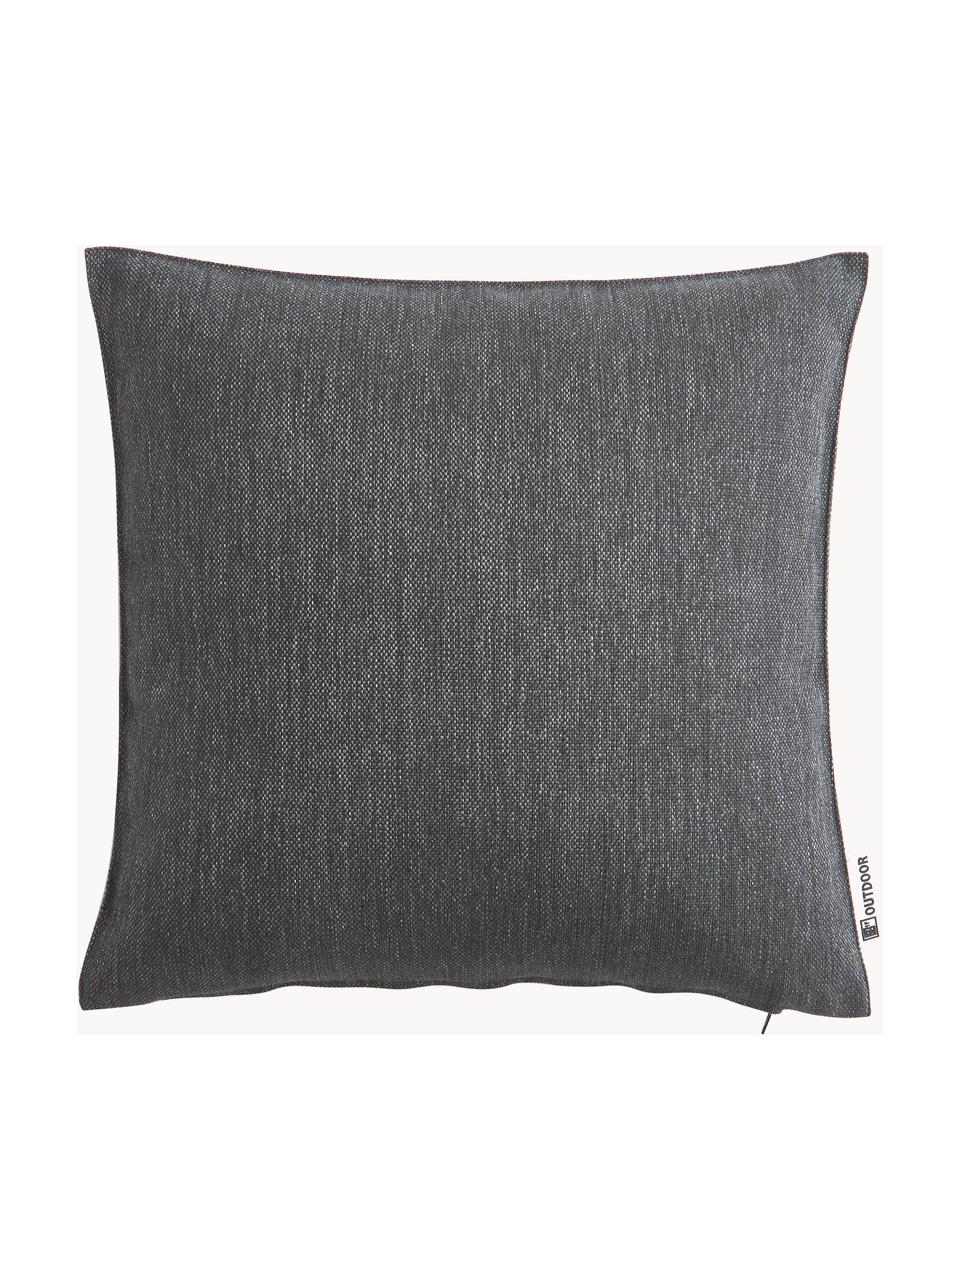 Cuscino imbottito da esterno Olef, 100% cotone, Grigio scuro, Larg. 45 x Lung. 45 cm